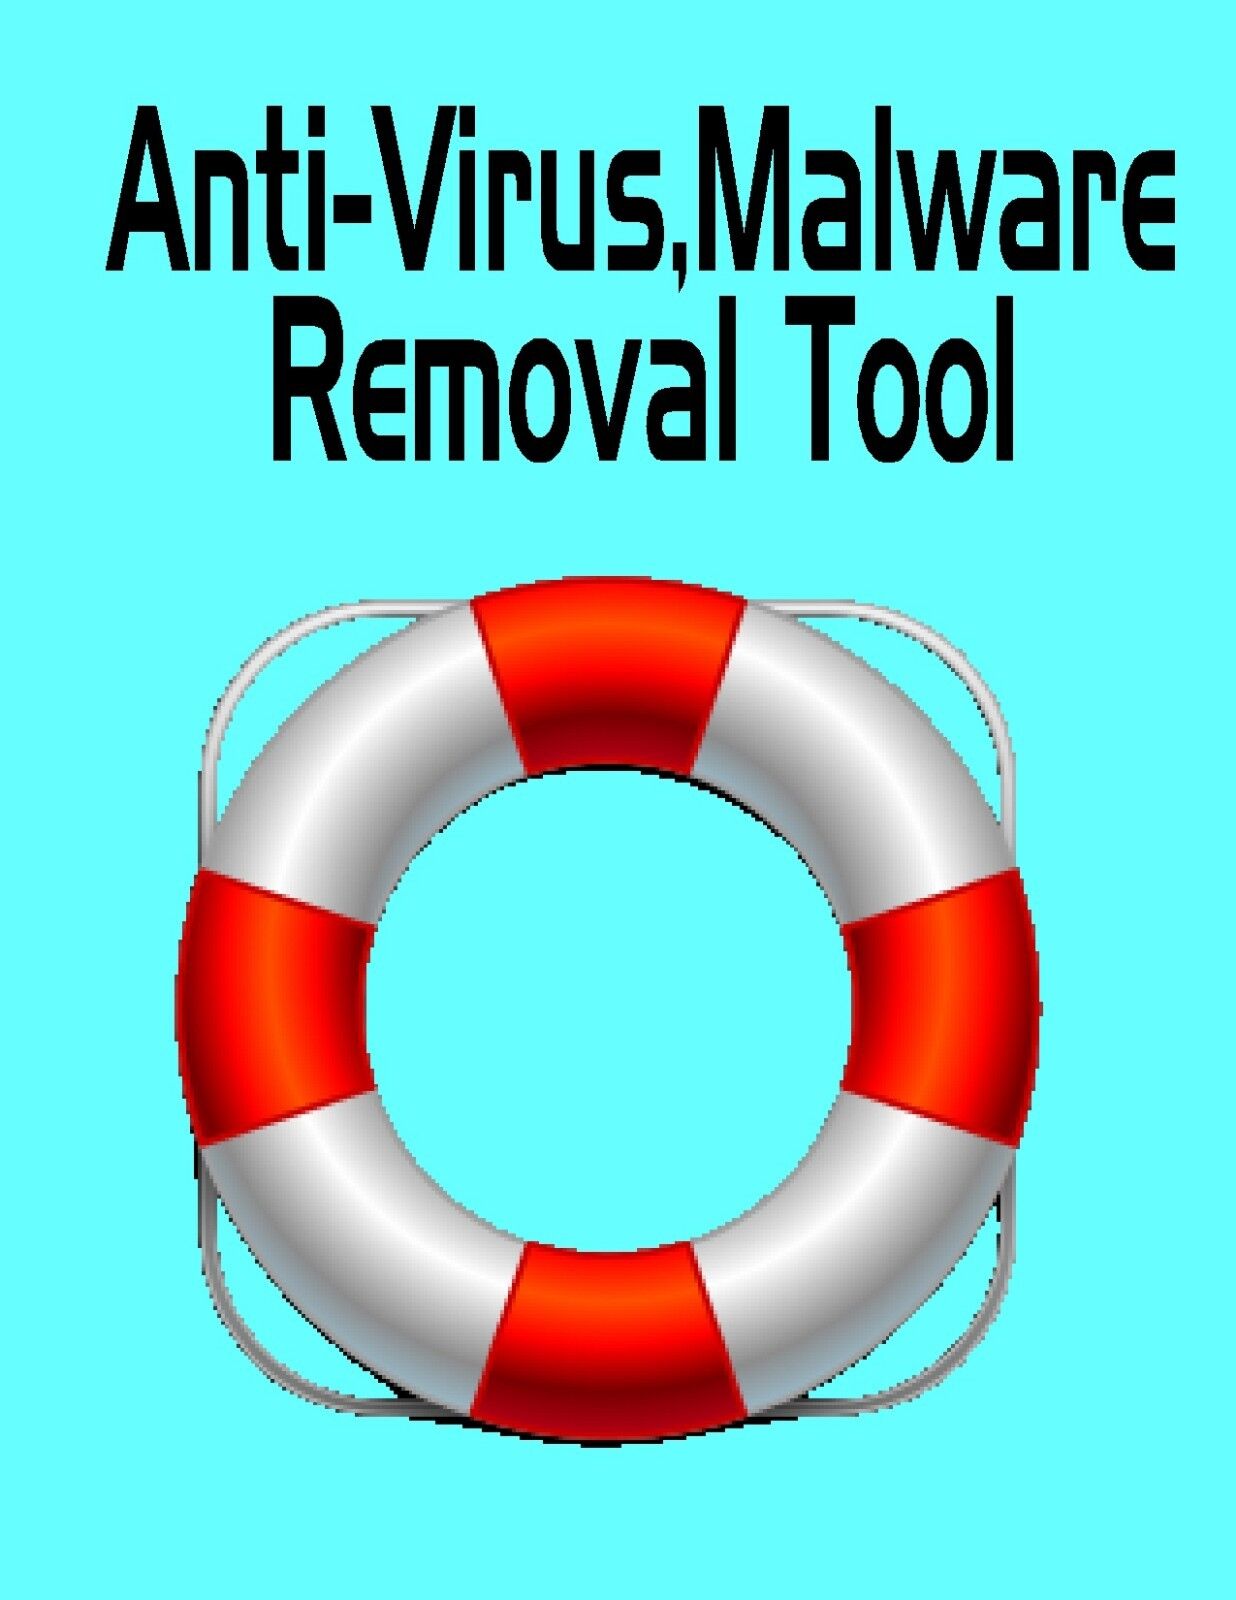 Computer Anti-Virus Removal Rescue Download Tool,Clean,Repair,Trojans,Malware